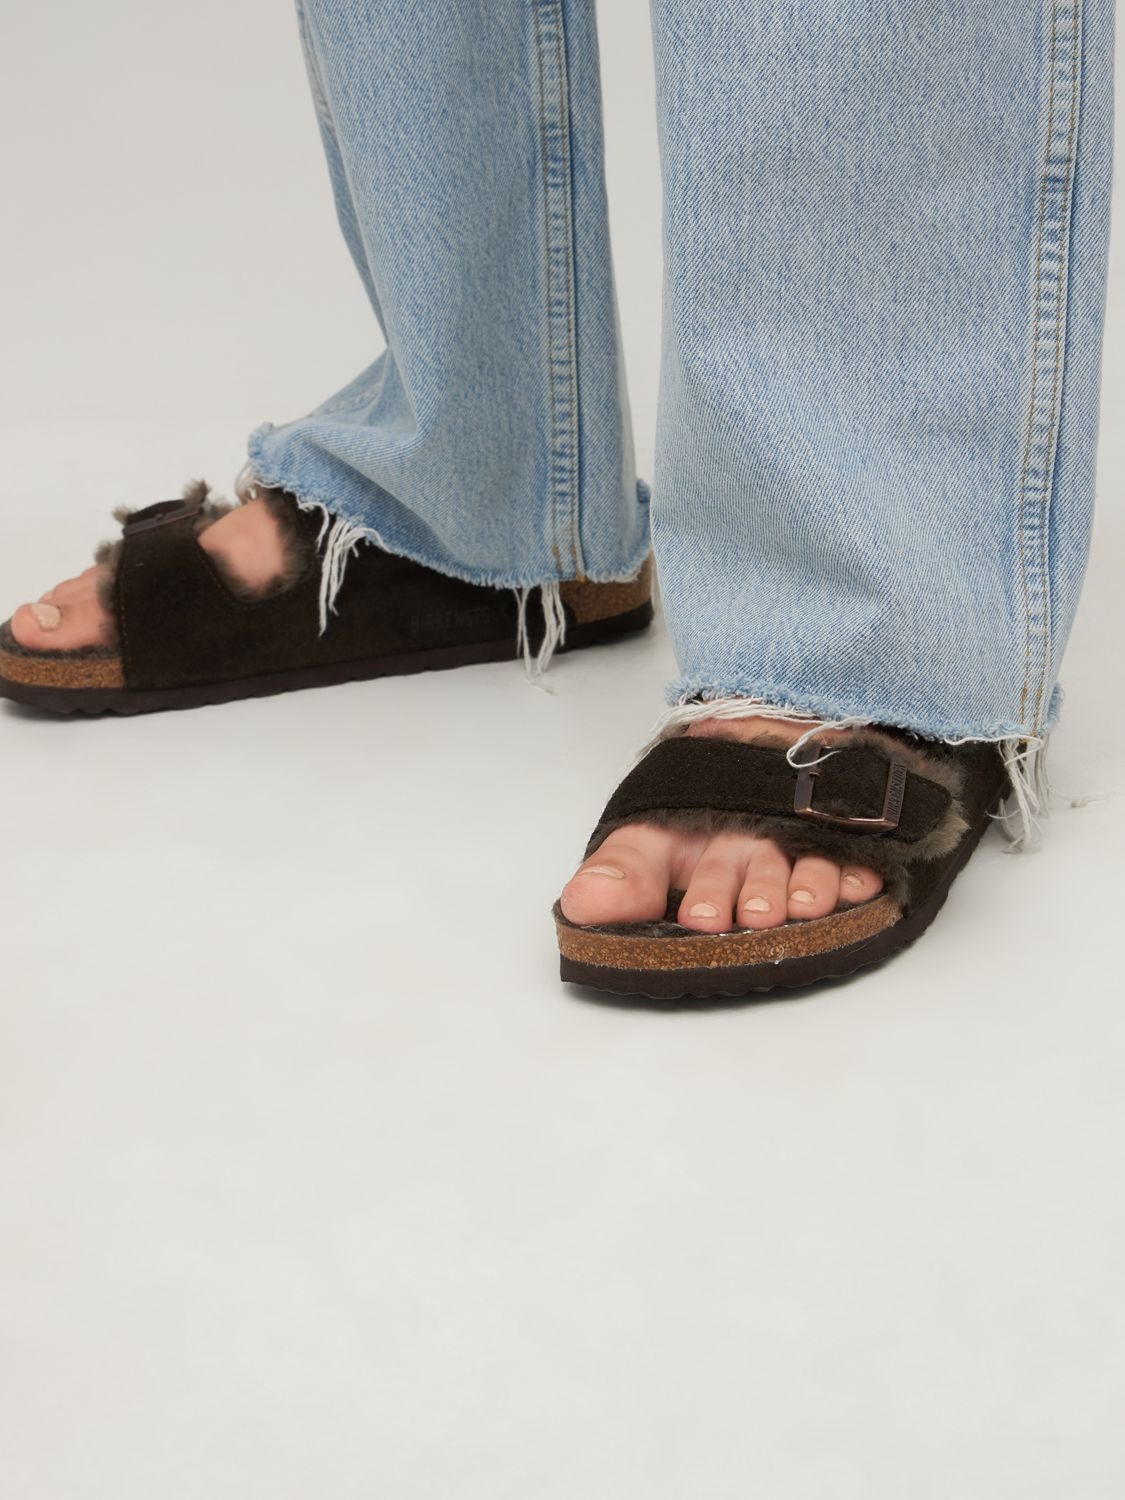 Shop Birkenstock Arizona Shearling & Suede Sandals In Dark Brown